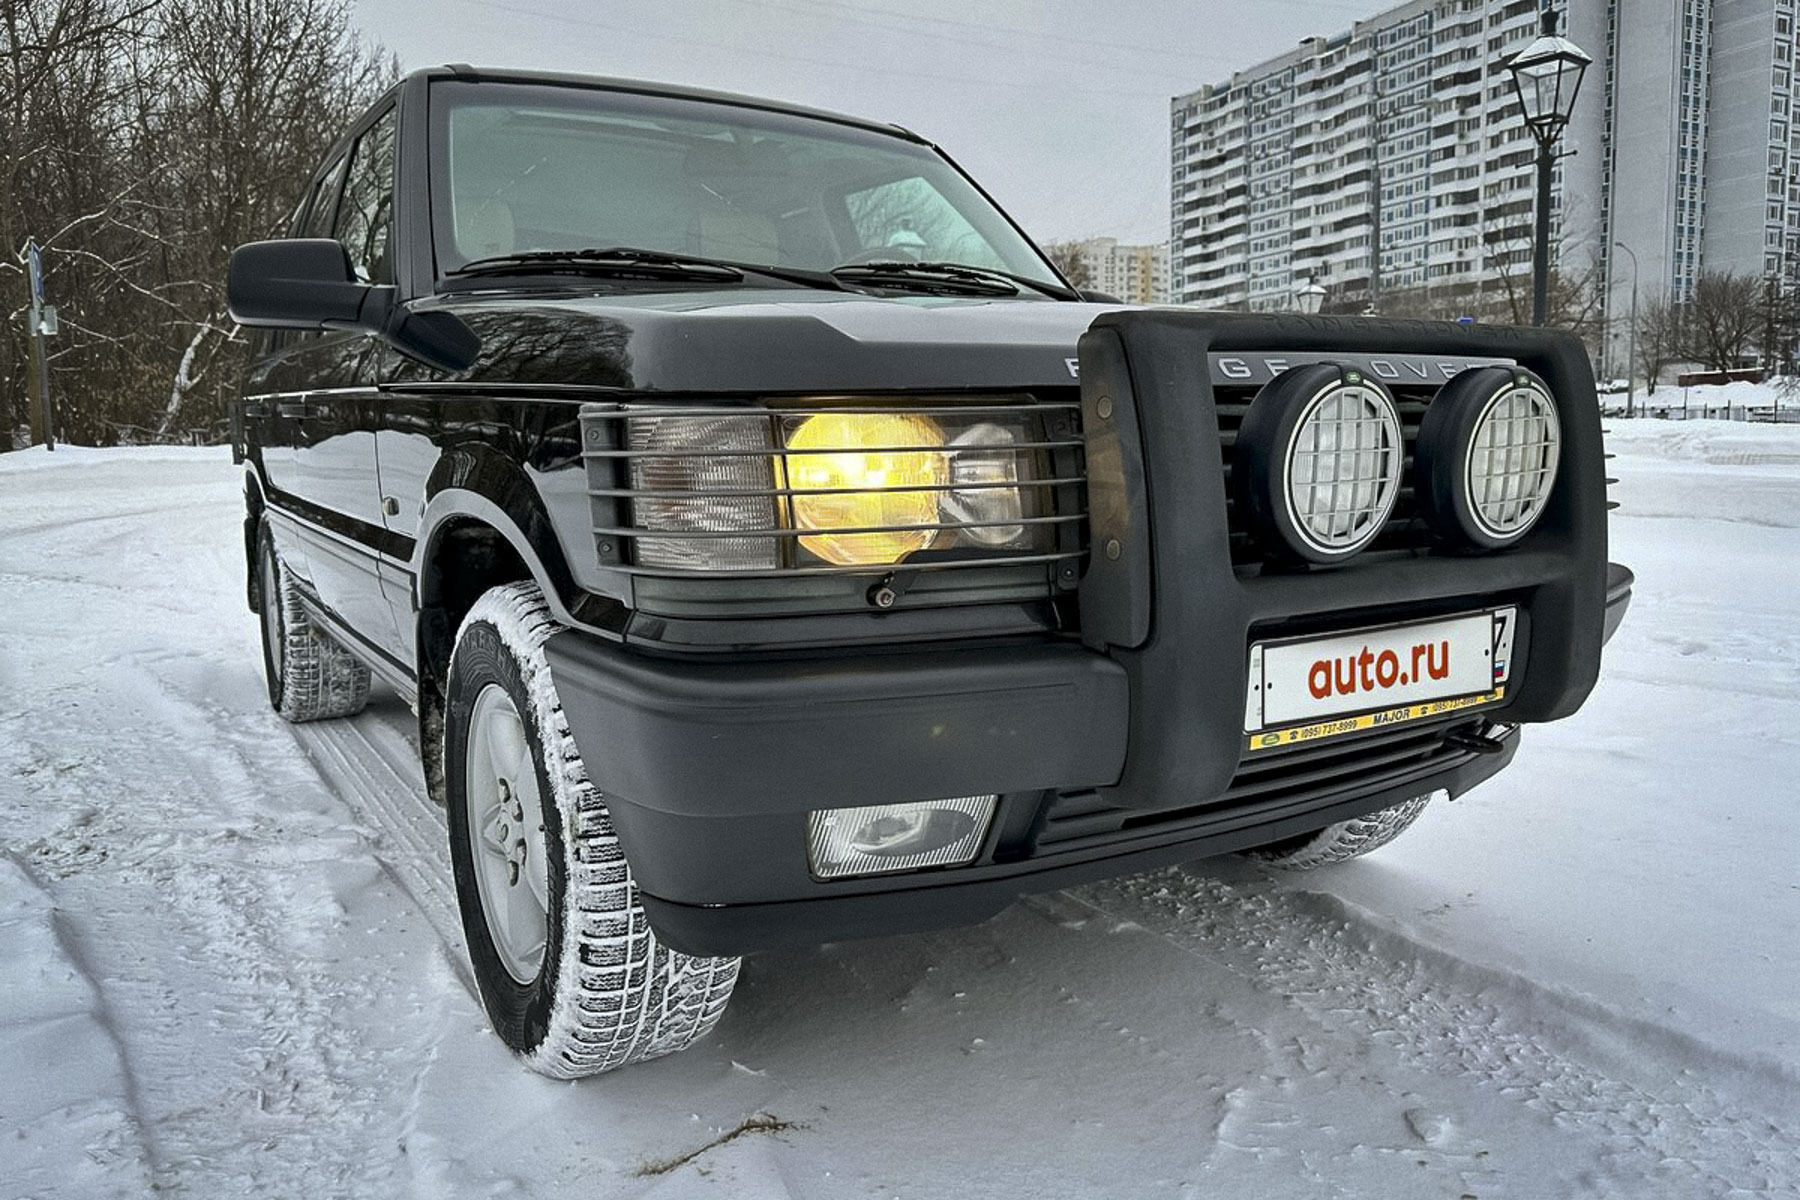 Почти новый 23-летний Range Rover продают в Москве за два миллиона рублей3